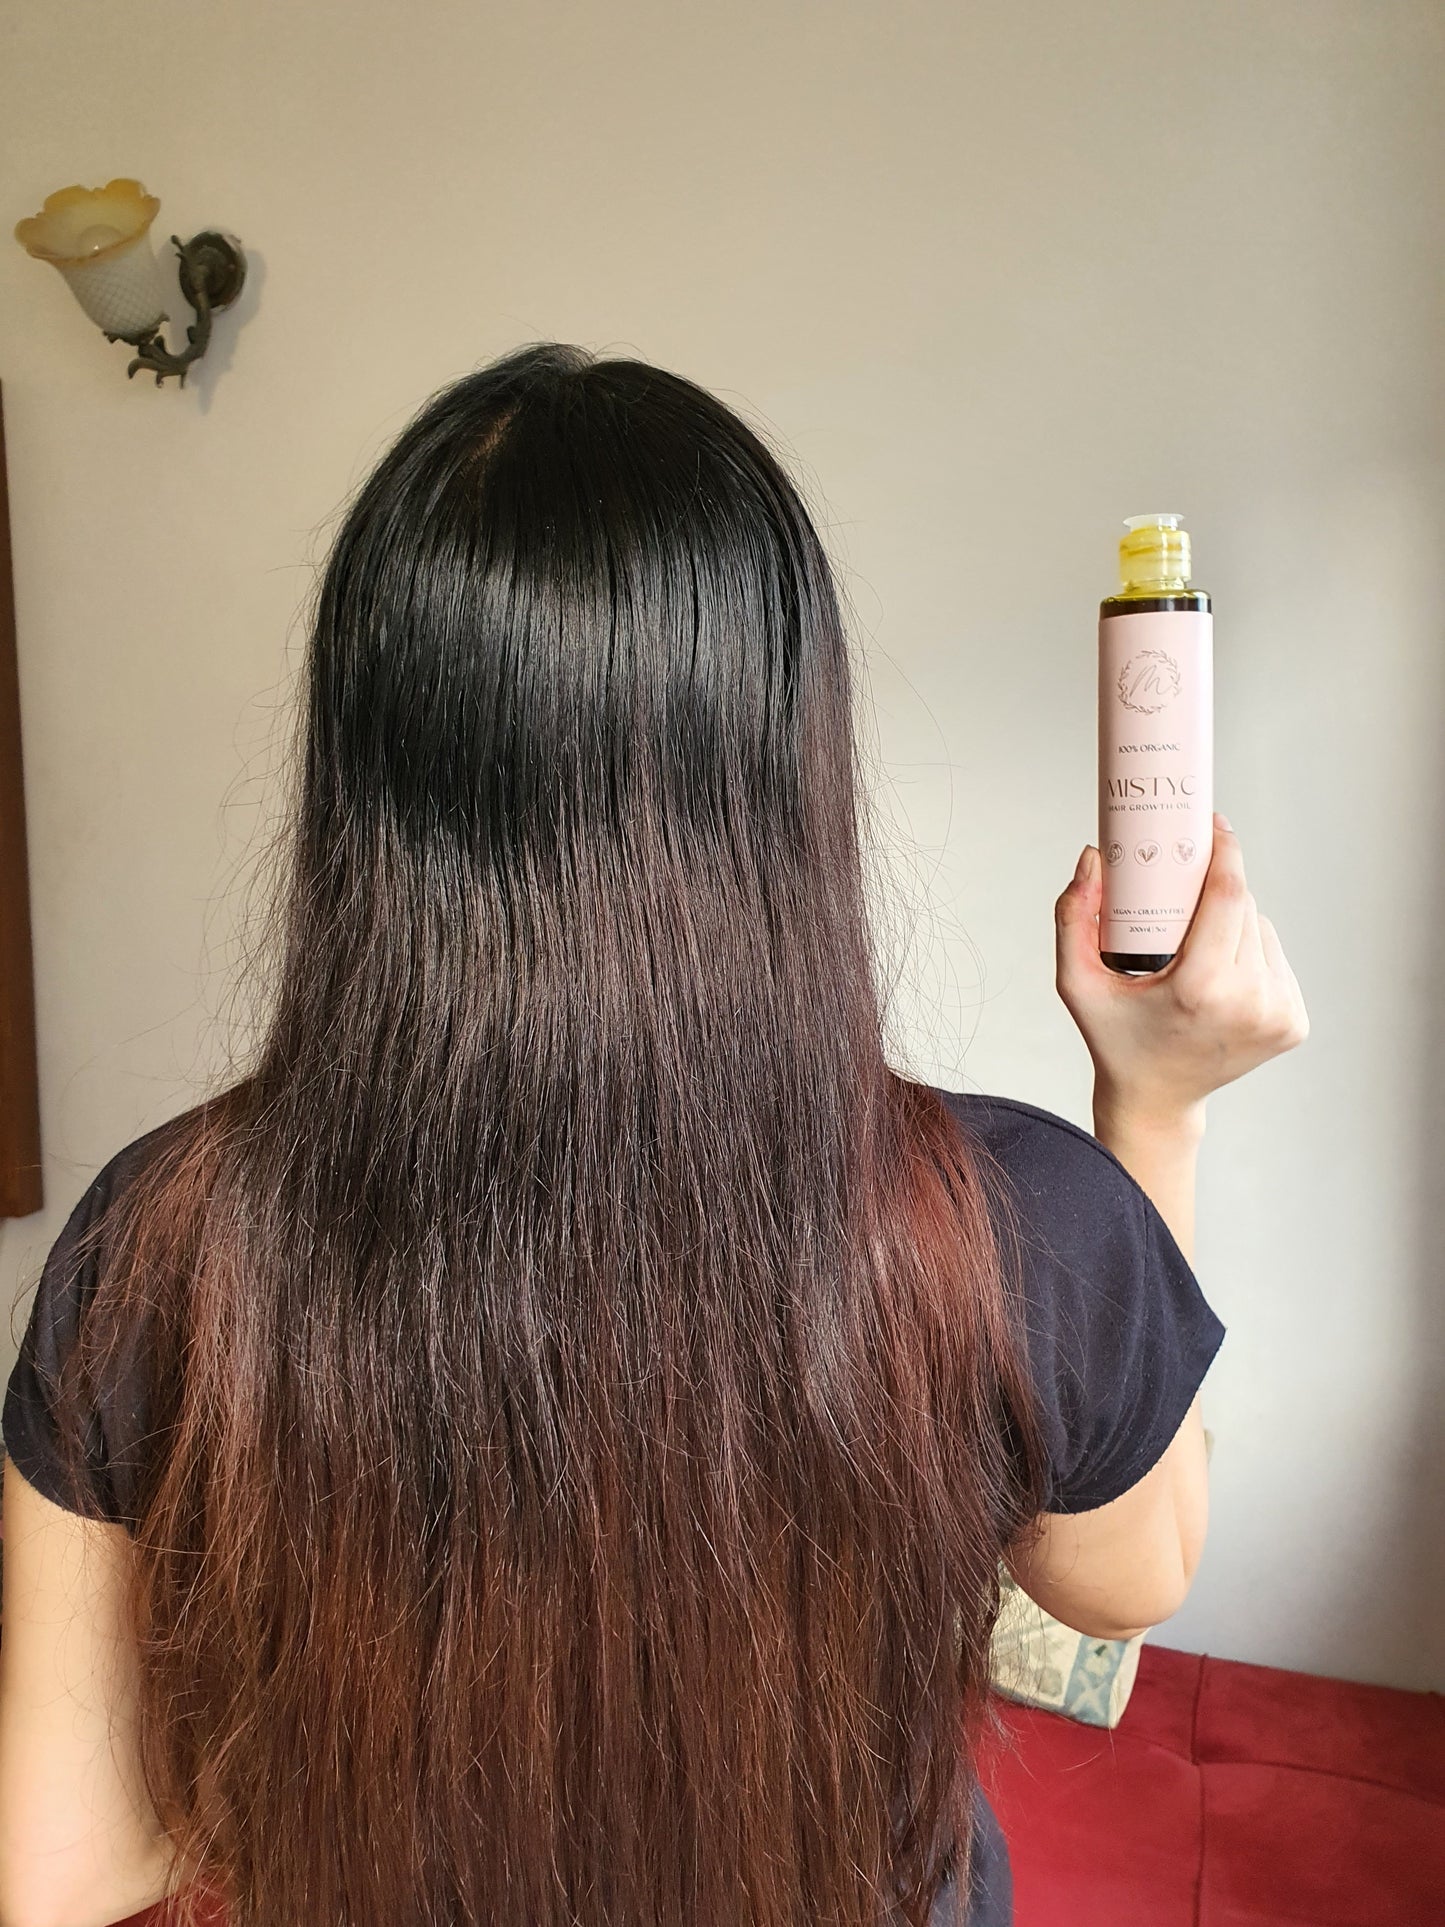 Mistyc Hair Growth Oil - 200 ml